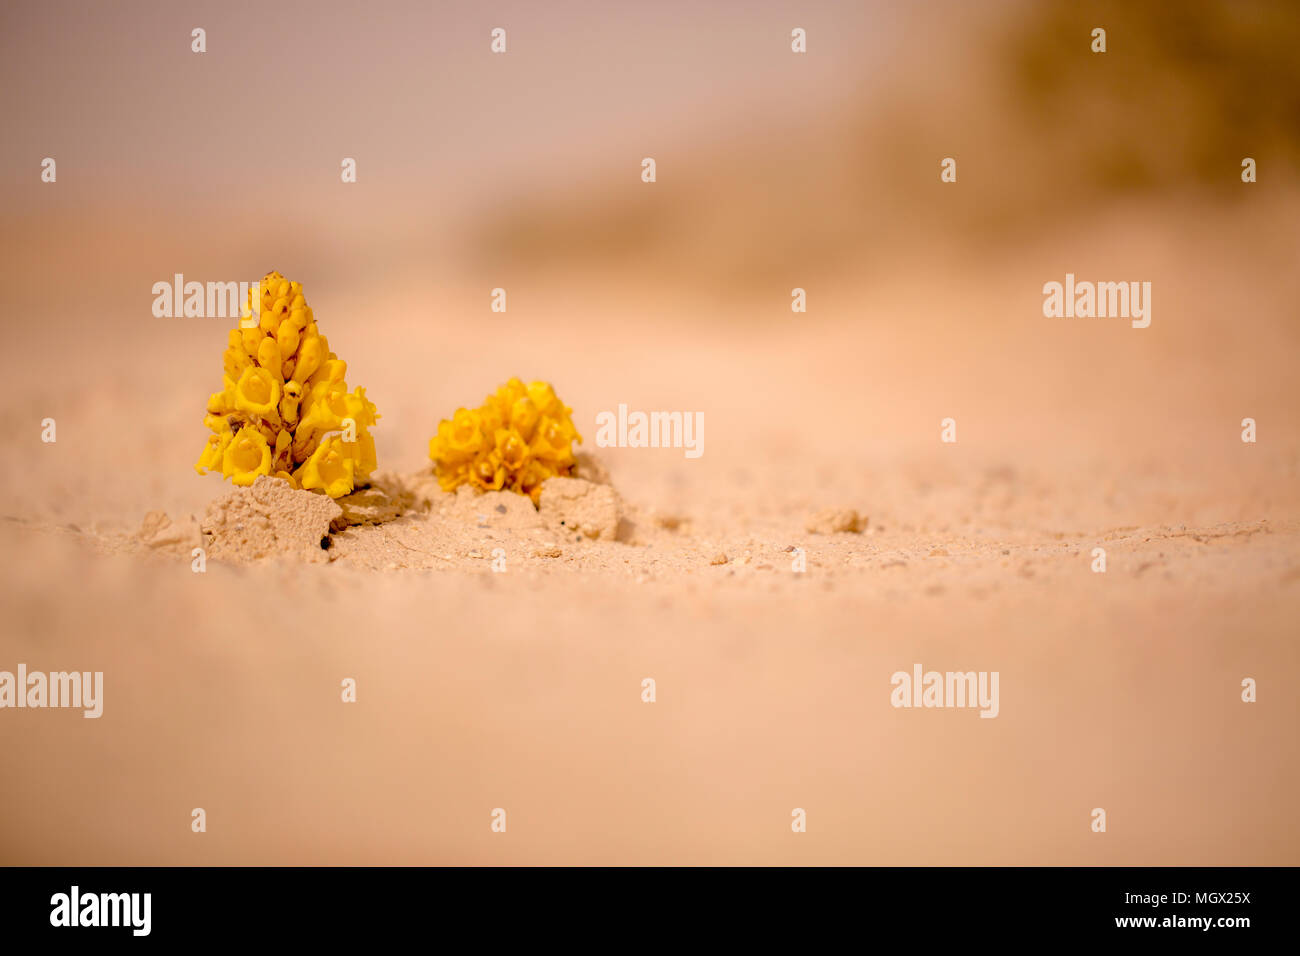 Gelb oder in der Wüste (broomrape Cistanche tubulosa) Blühende in der Wüste. Diese Pflanze ist eine parasitäre Mitglied des broomrape Familie. Stockfoto